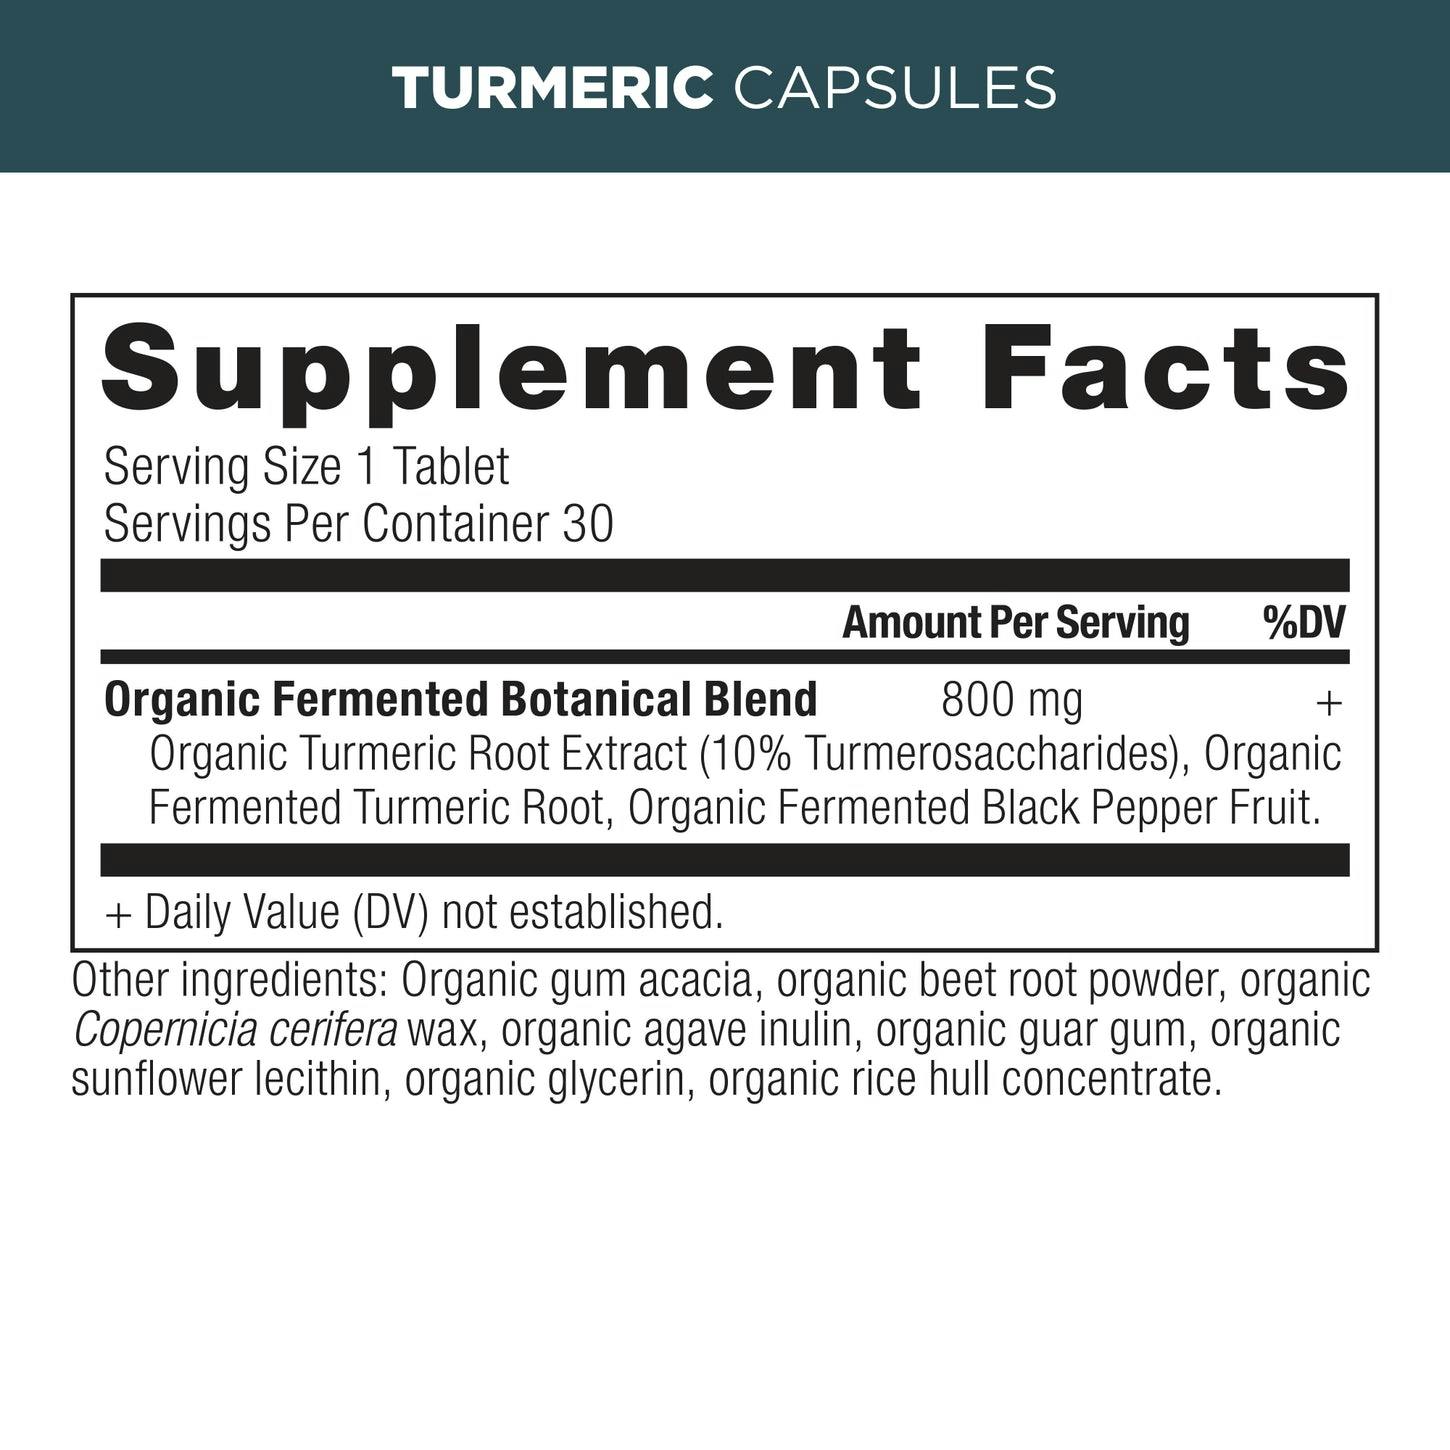 Turmeric Capsules supplement label